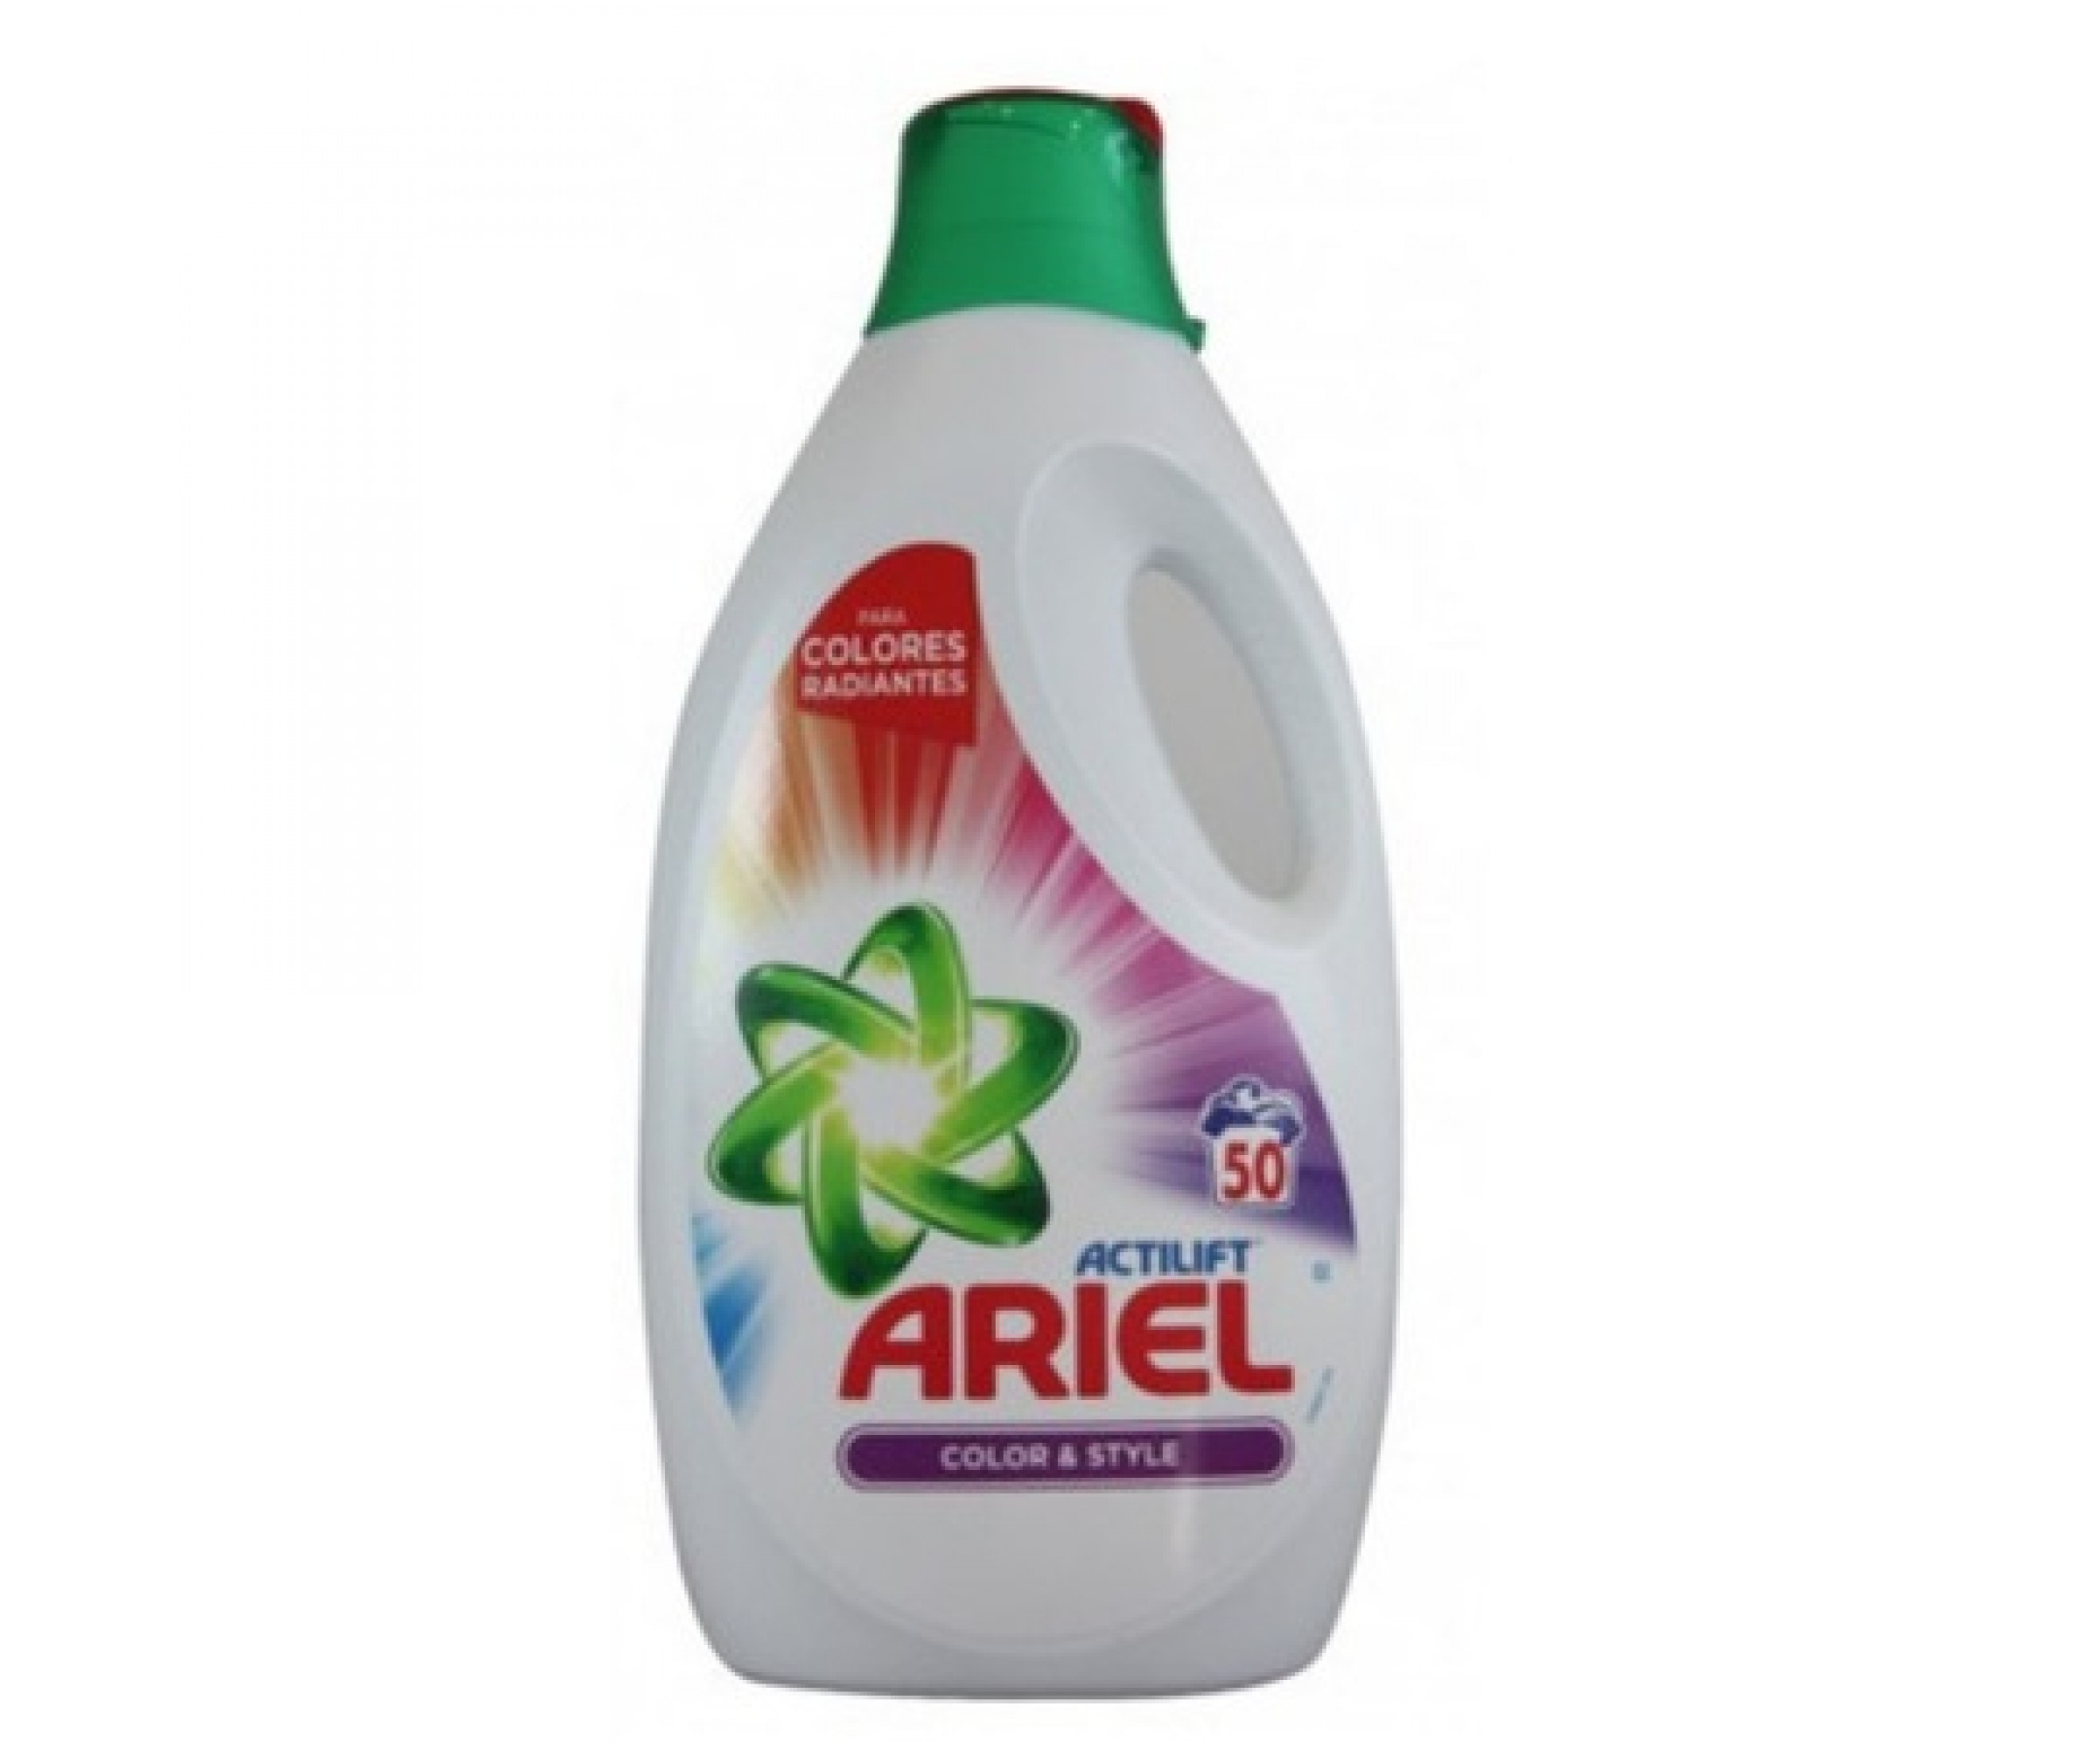 Течен перилен препарат Ariel Color & Style, 3.05 литра, 50 изпирания